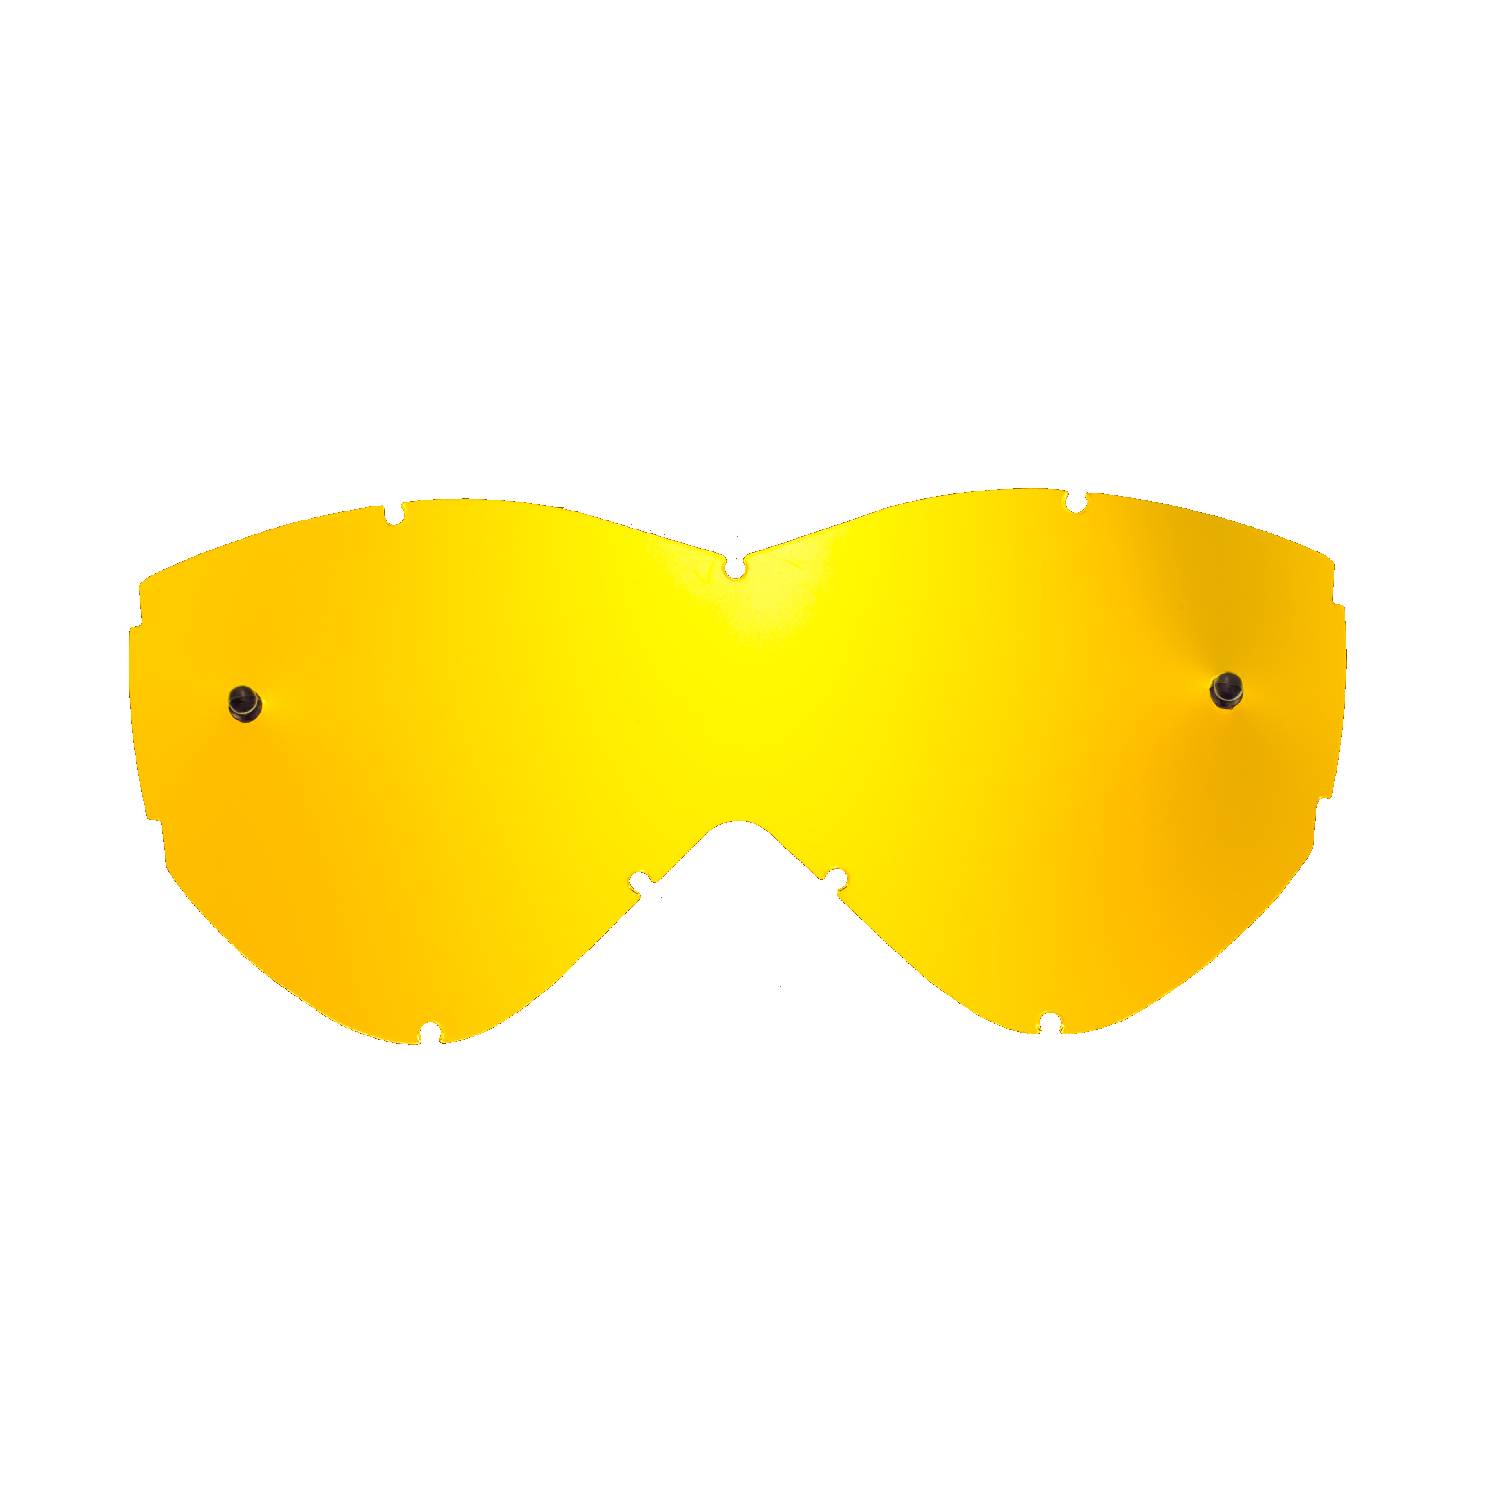 Lente di ricambio oro specchiato compatibile per occhiale/maschera Smith Warp